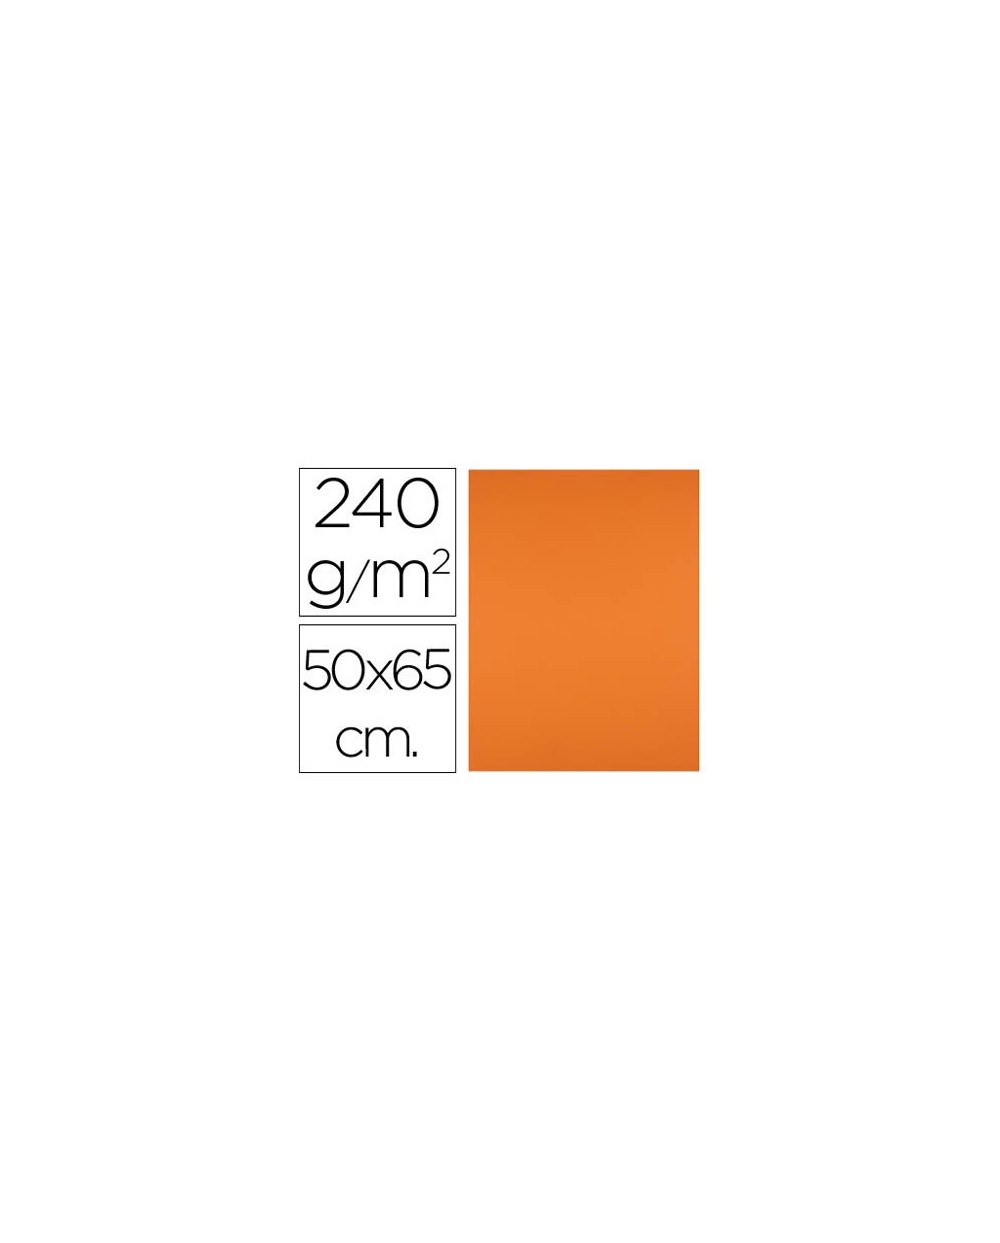 Cartulina liderpapel 50x65 cm 240g m2 naranja